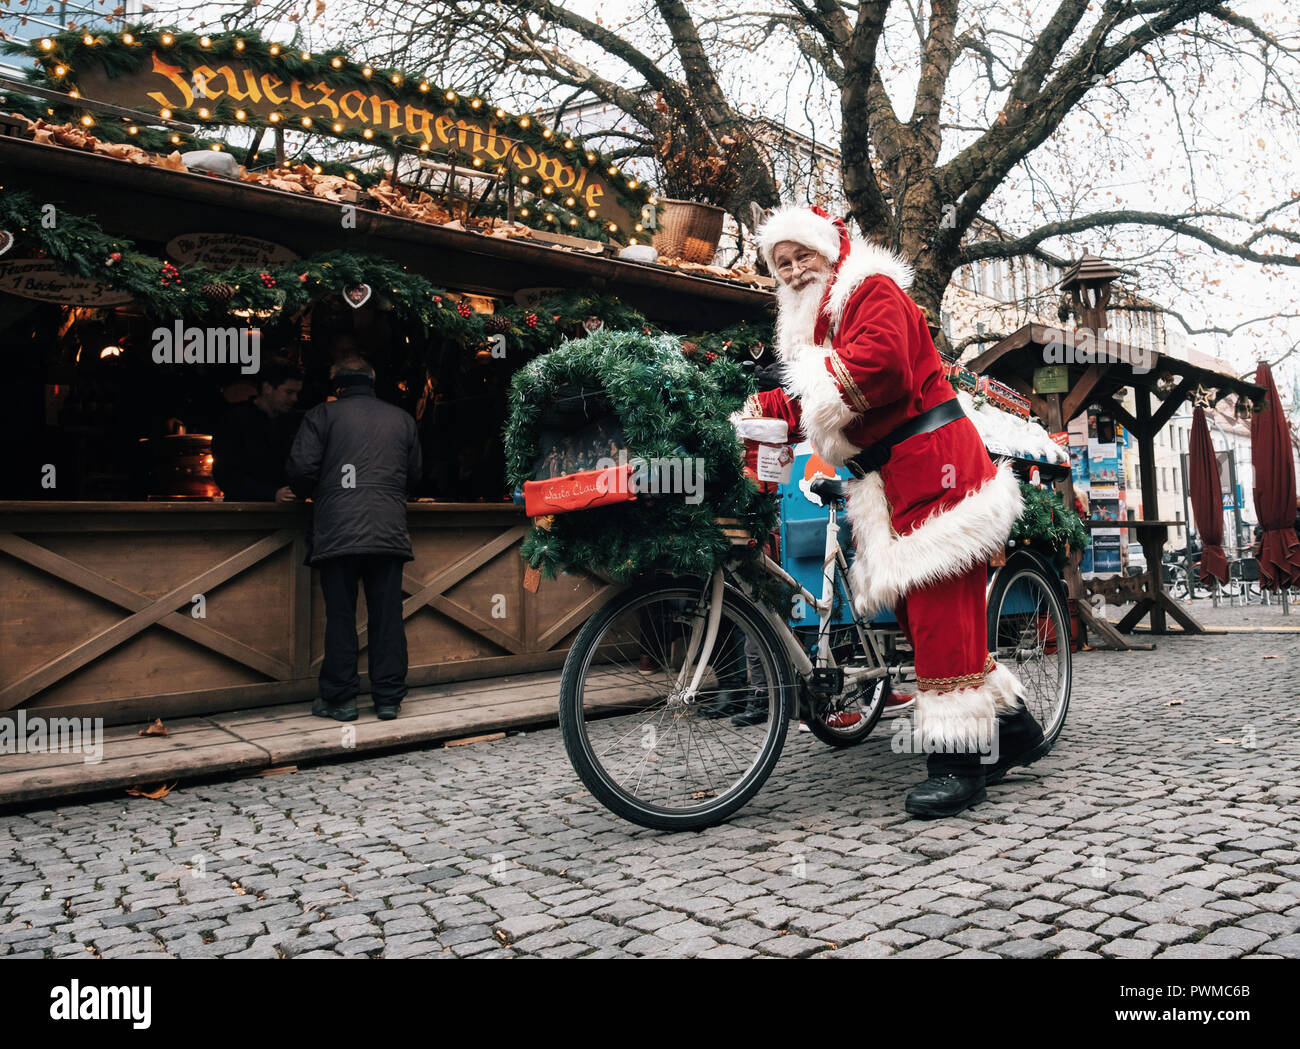 Munich, Bayern, Deutschland - Dezember 6, 2017: Santa Claus fährt ein eingerichtet Fahrrad mit Geschenken auf Weihnachtsmarkt Rindermarkt in München. Stockfoto